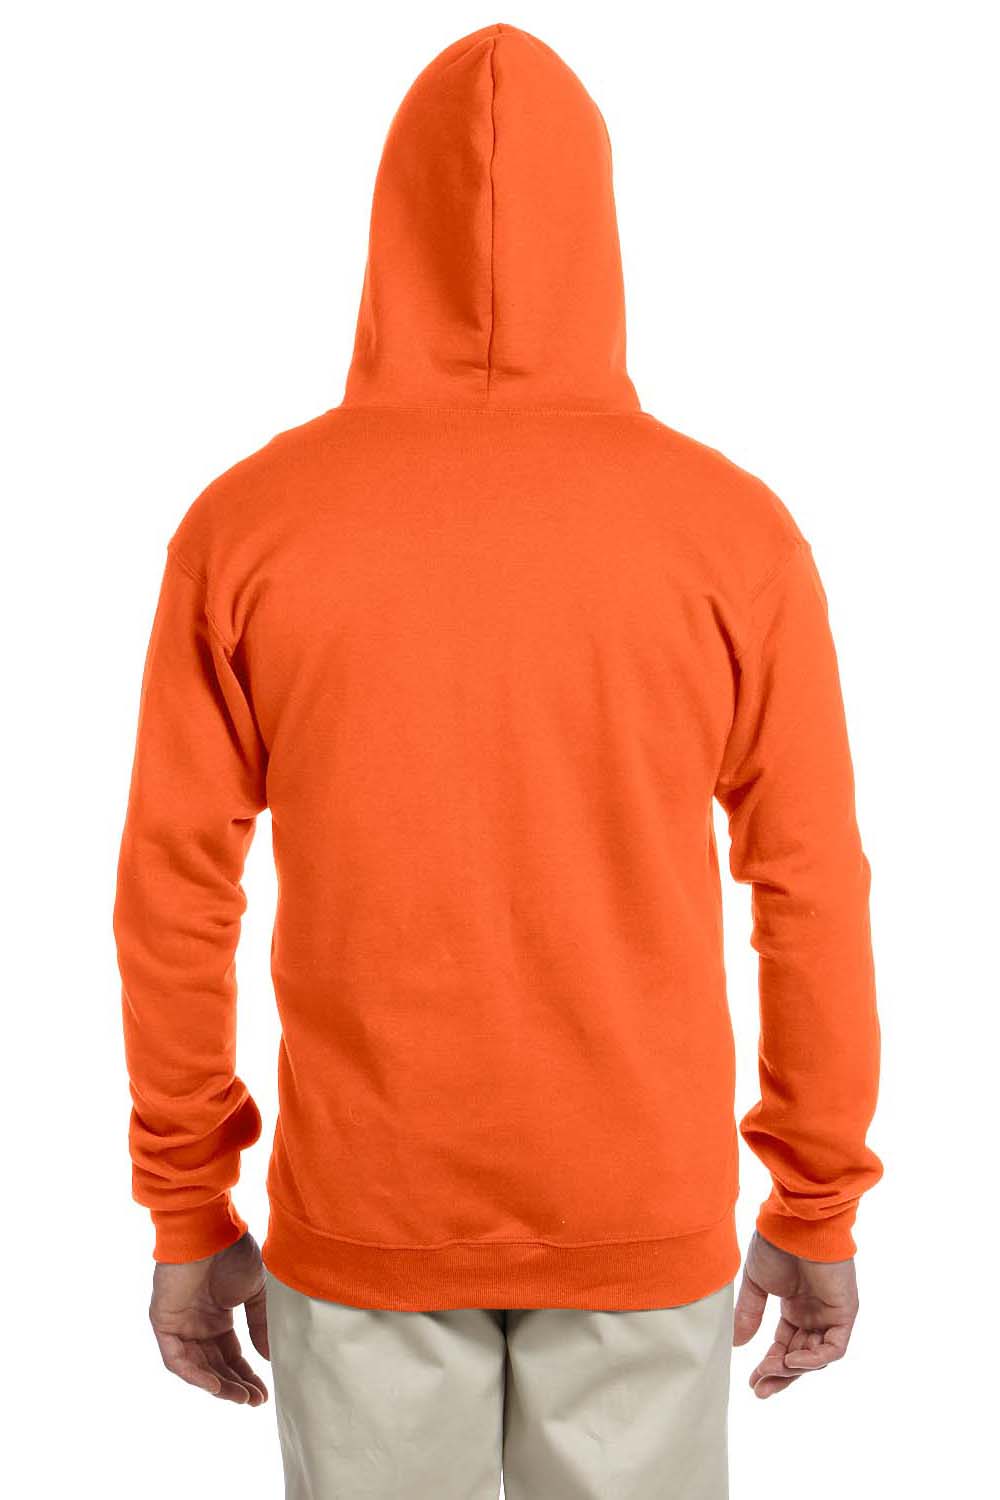 Jerzees 993 Mens NuBlend Fleece Full Zip Hooded Sweatshirt Hoodie Safety Orange Back